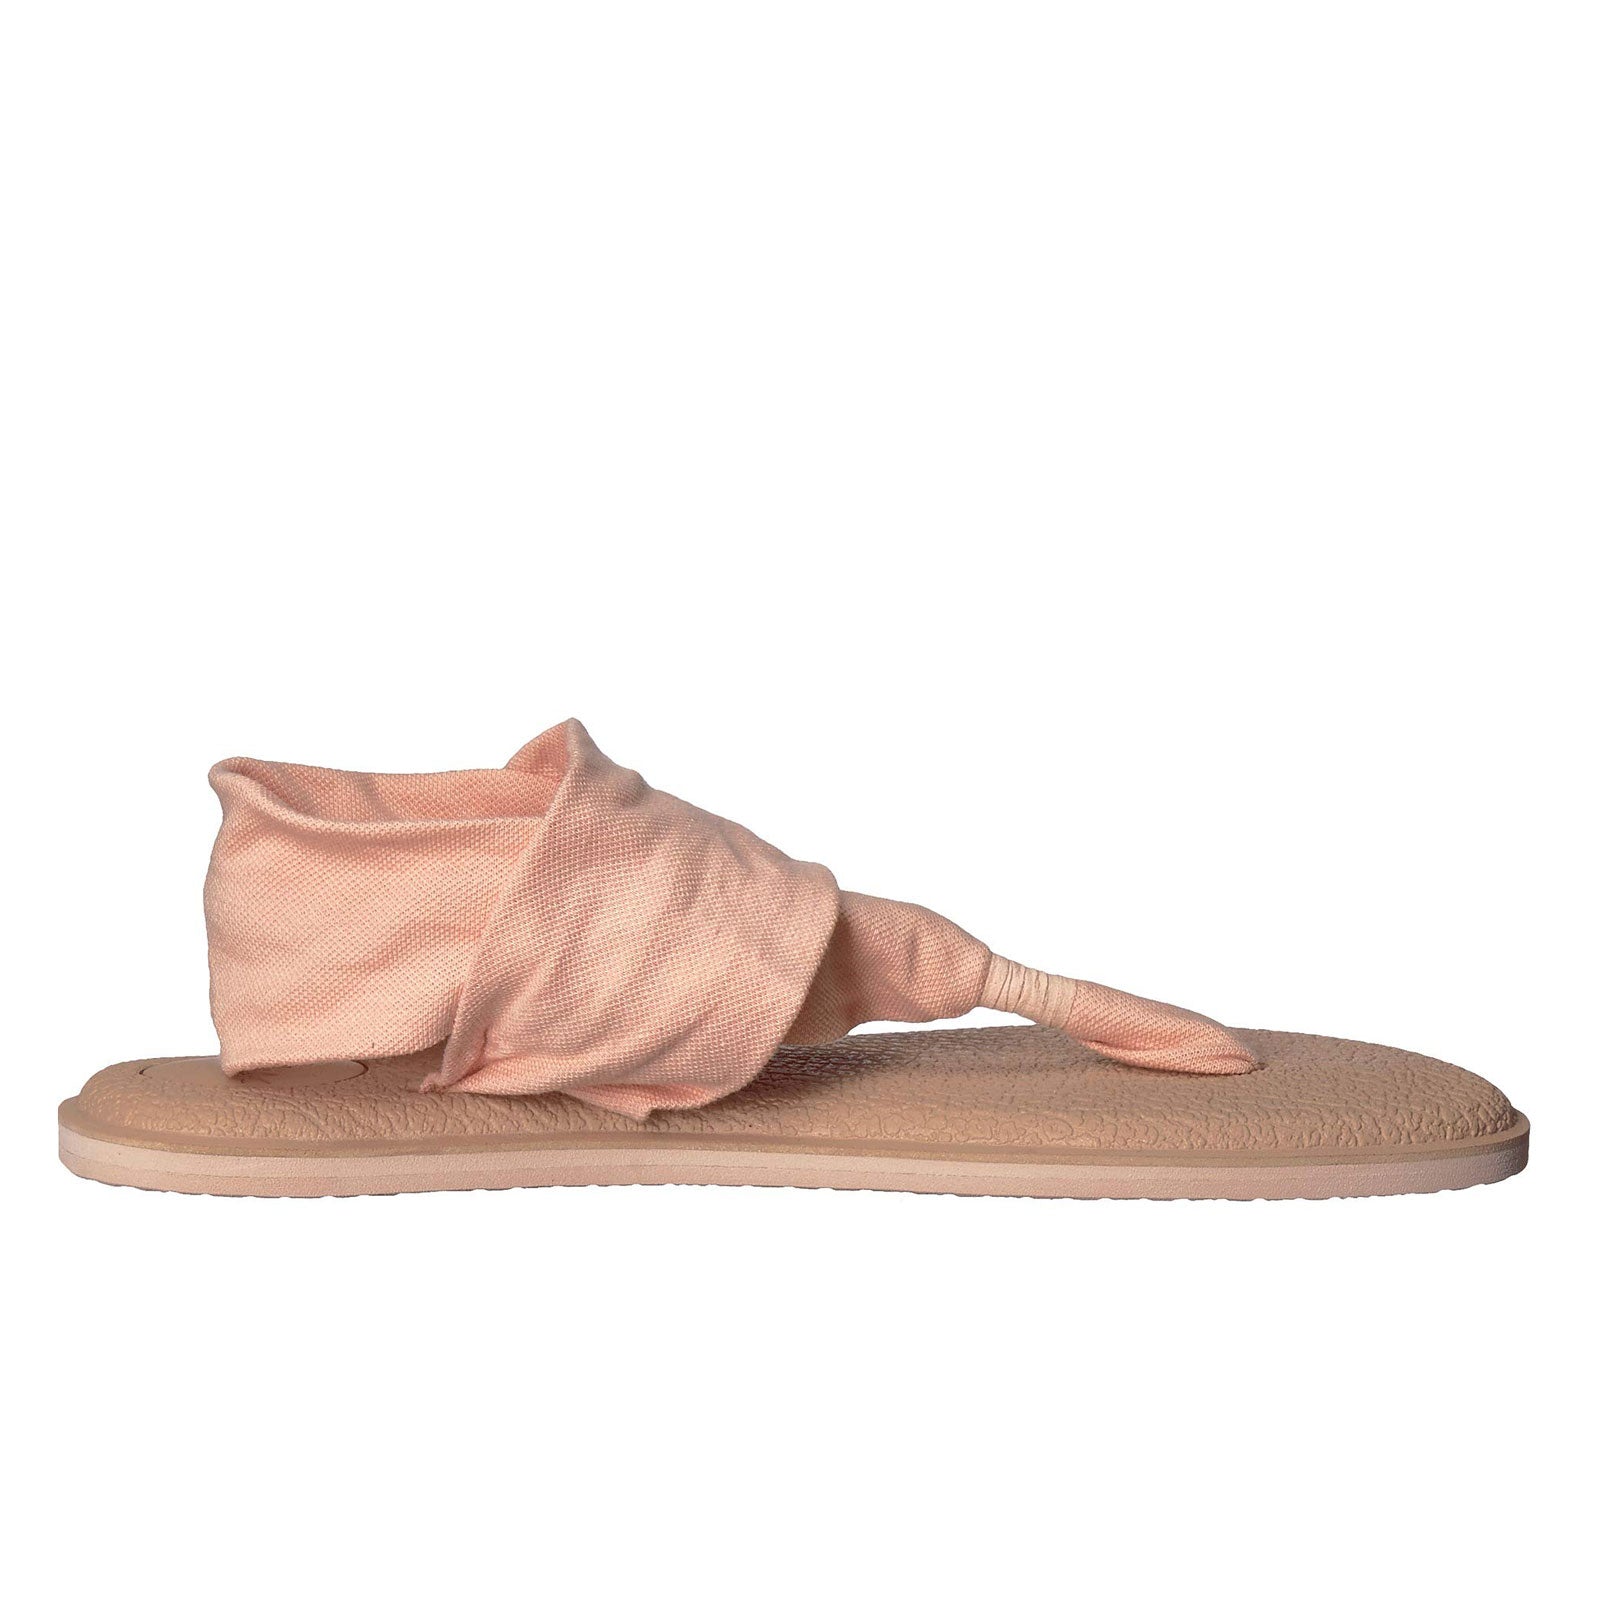 Sanuk Yoga Sling 2 – Milano Shoes